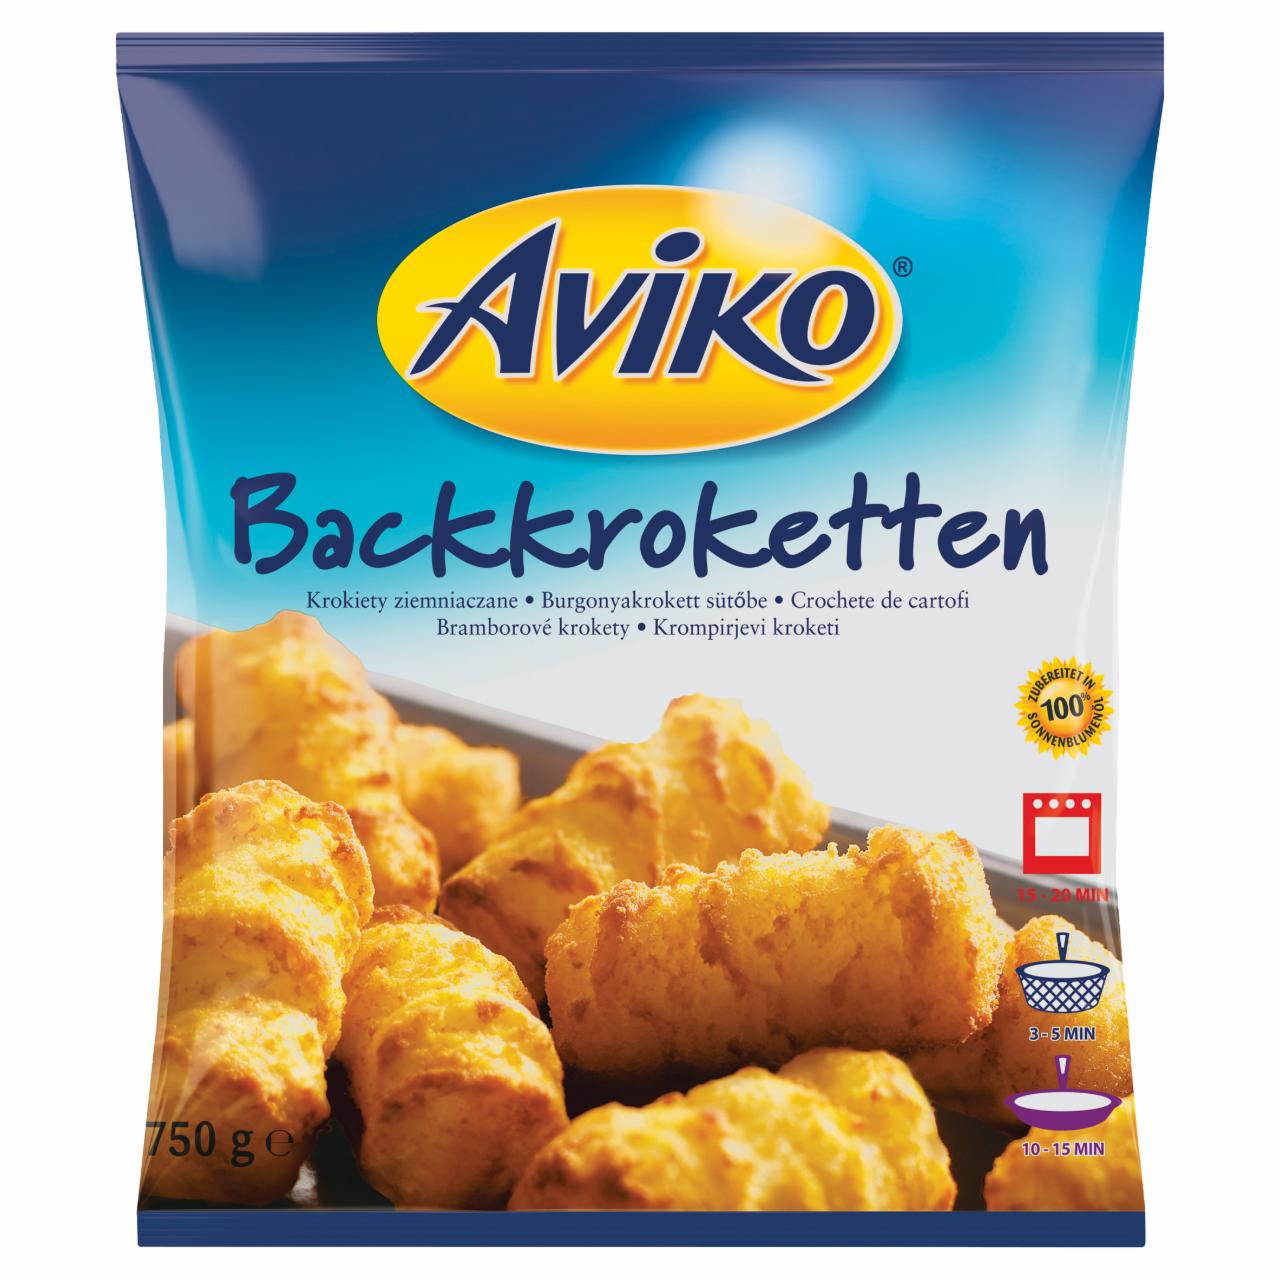 Képek - Aviko elősütött, gyorsfagyasztott burgonyakrokett sütőbe 750 g